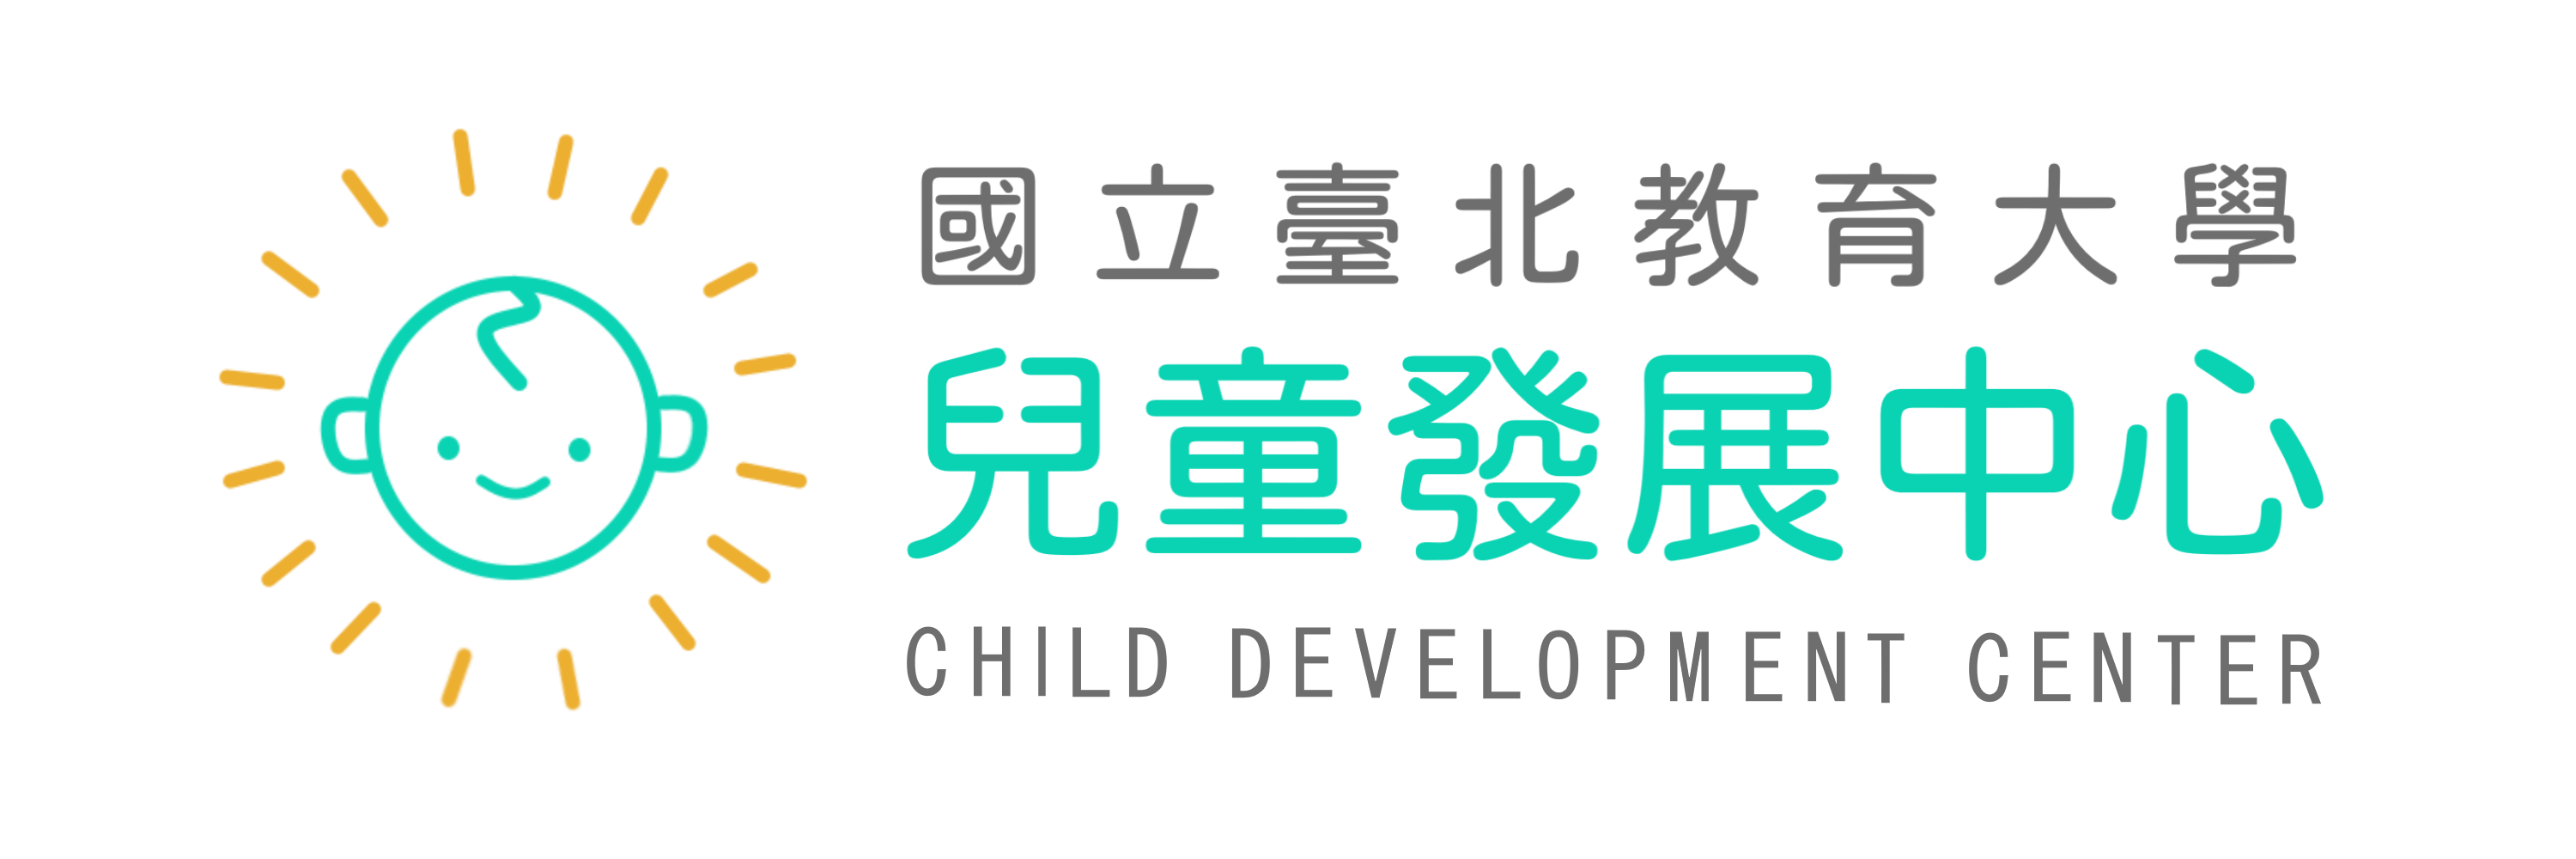 國立臺北教育大學兒童發展中心